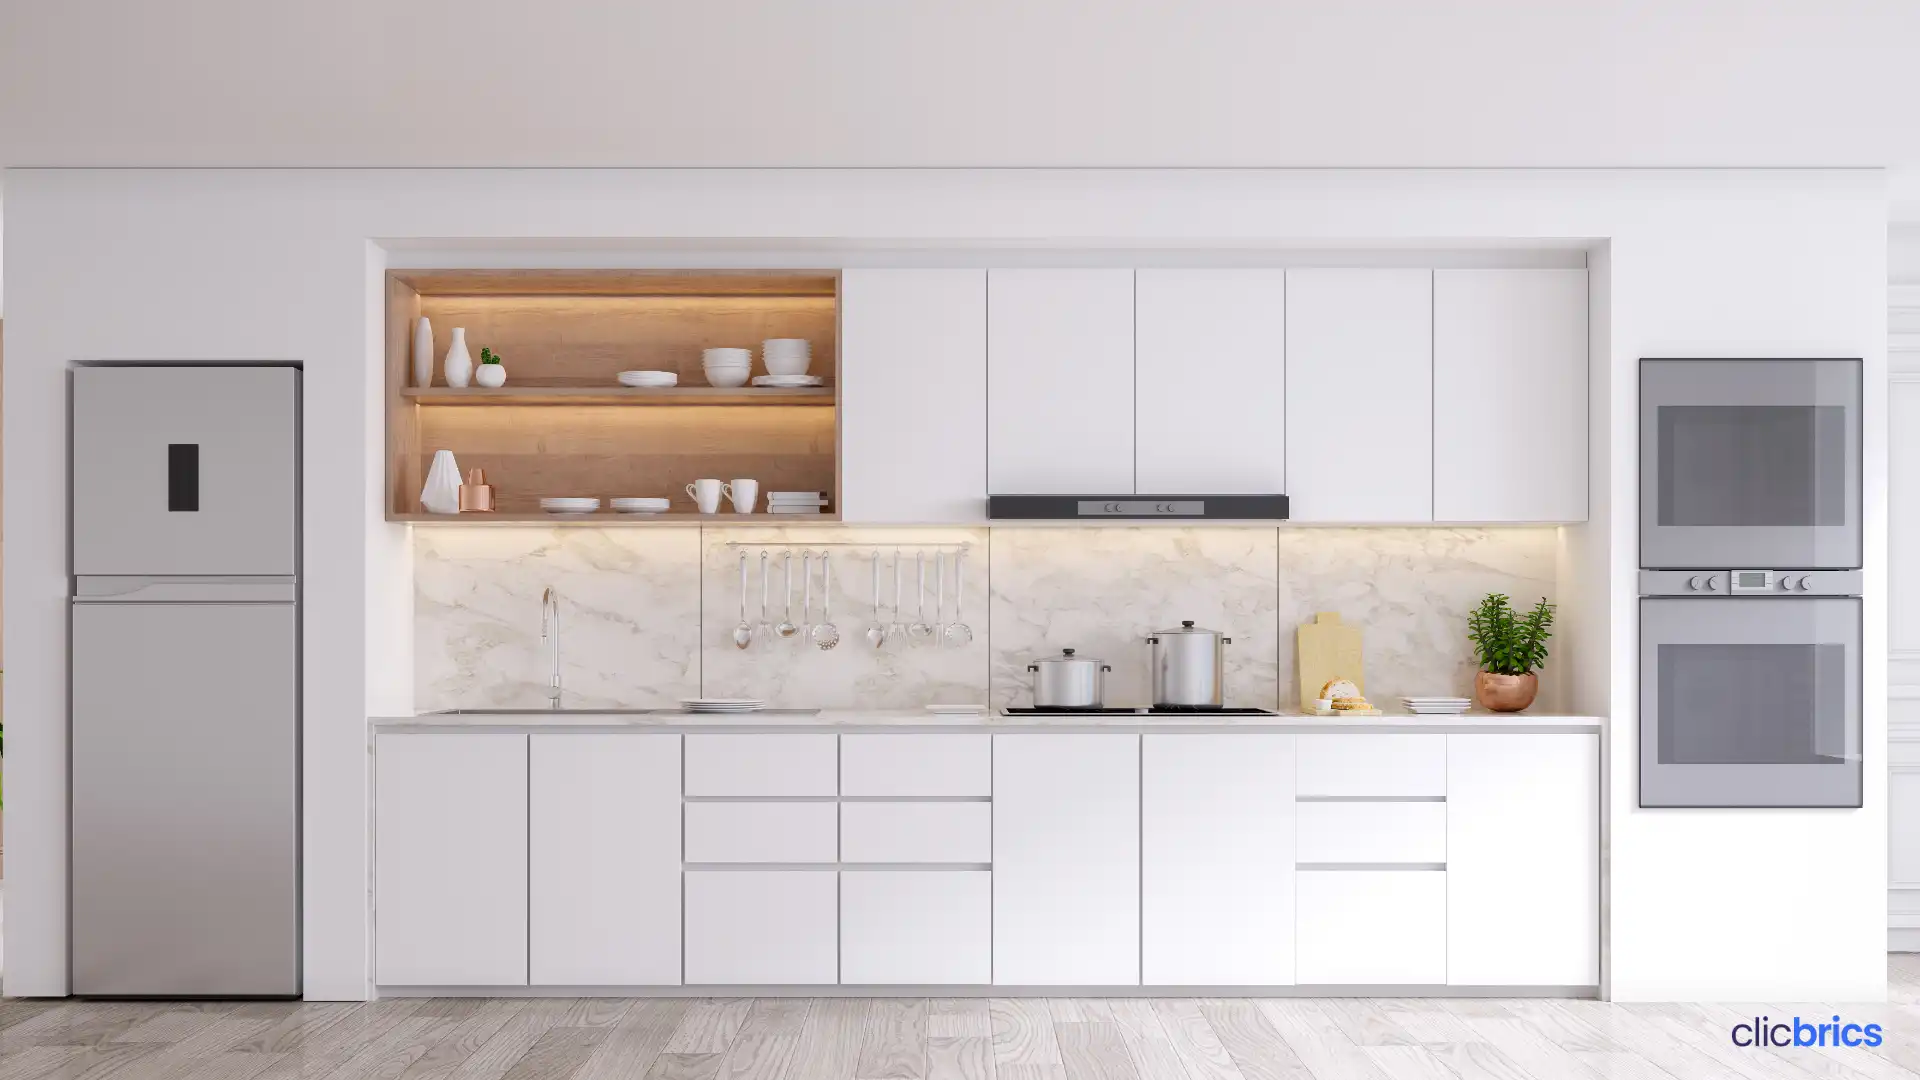 parallel modular kitchen design